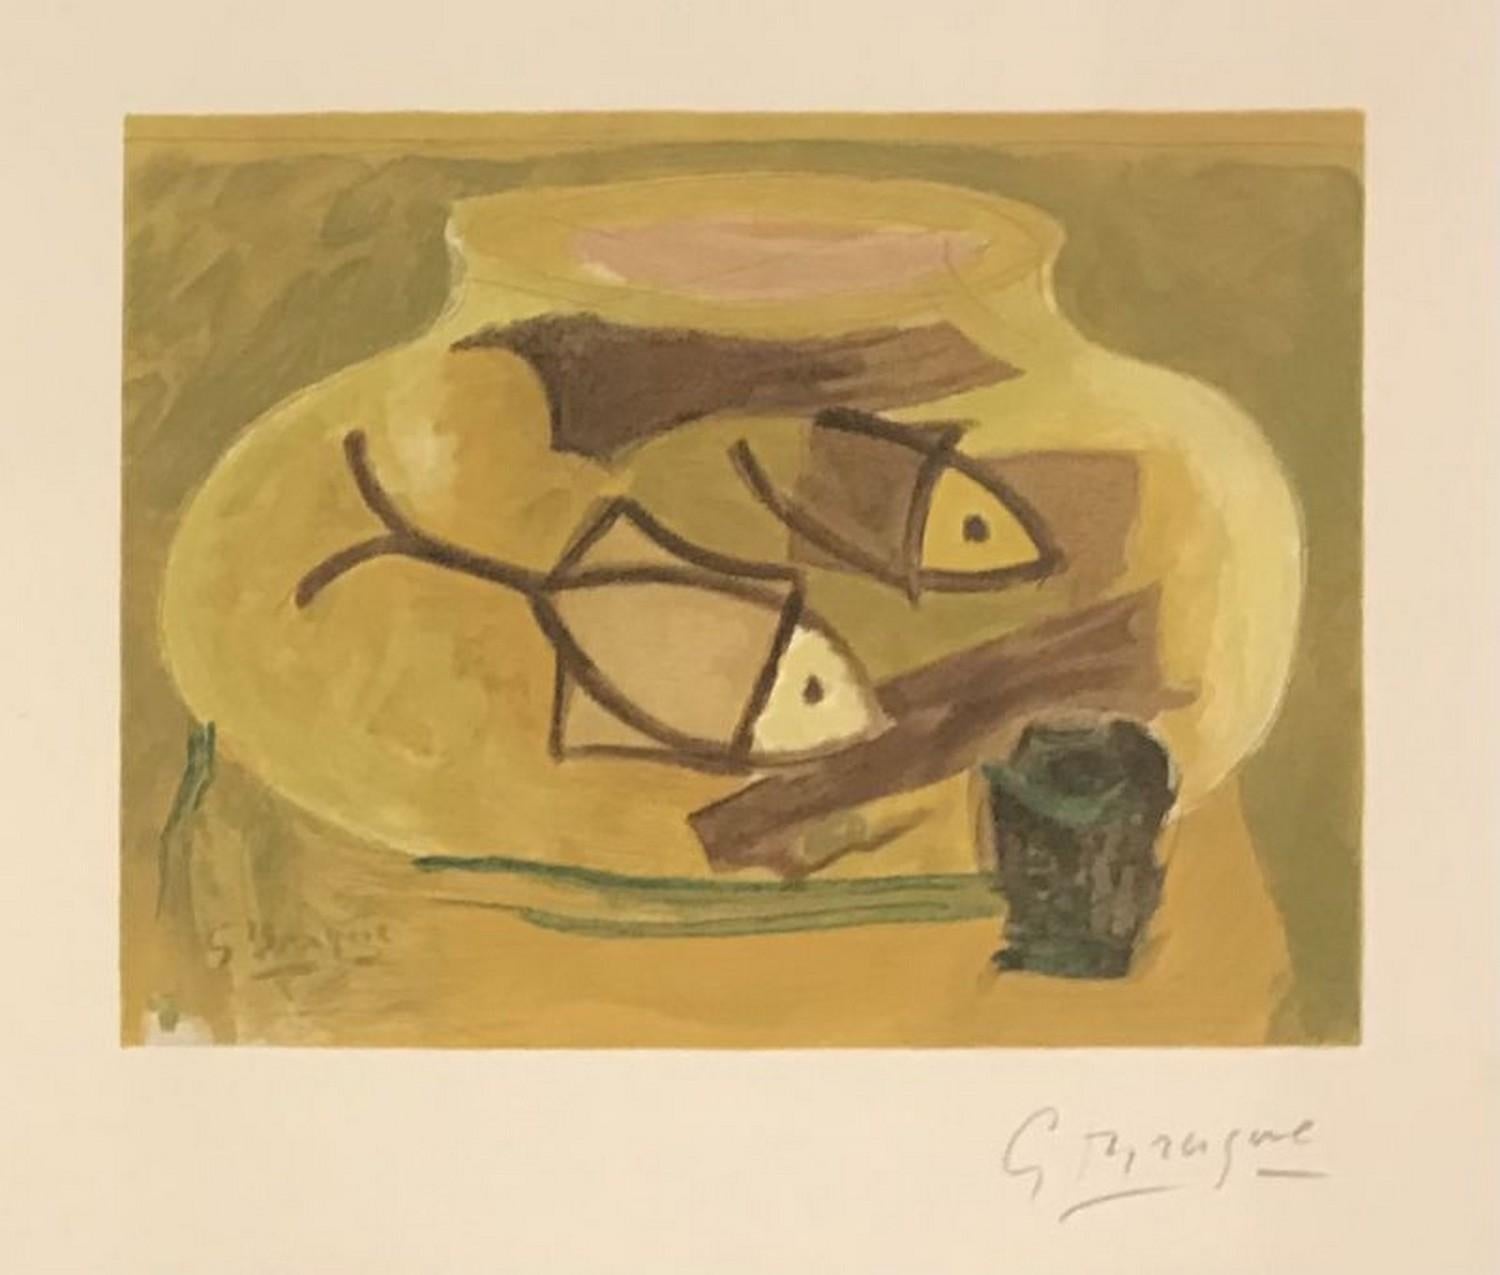 (after) Georges Braque Abstract Print - Une aventure méthodique 